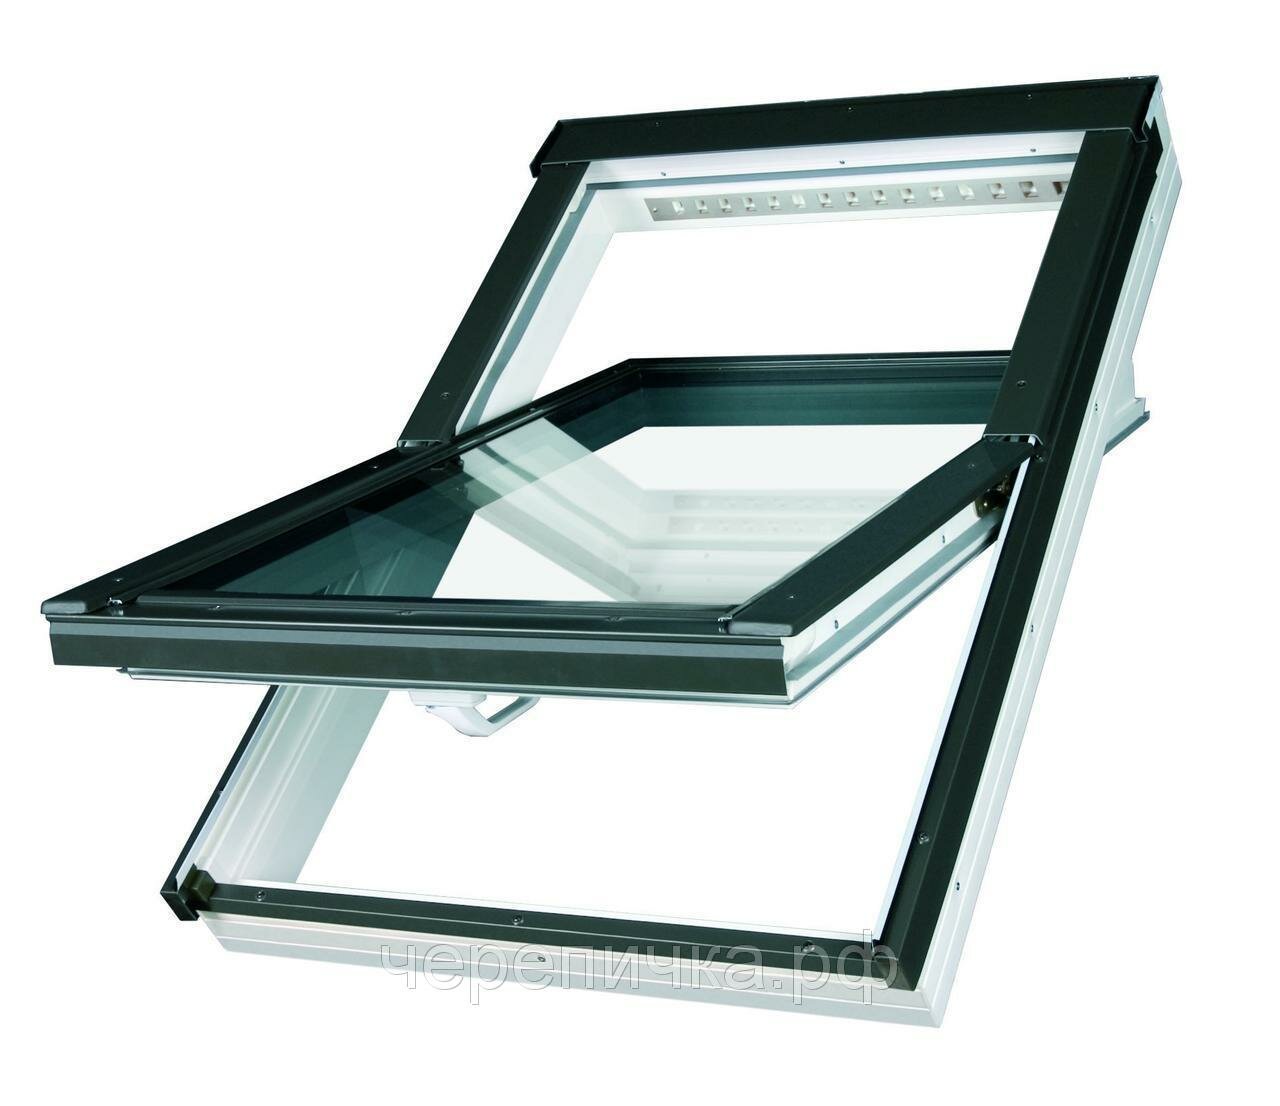 Мансардное окно Fakro PTP U4 PROFI ПВХ двухкамерным стеклопакетом (78*140)